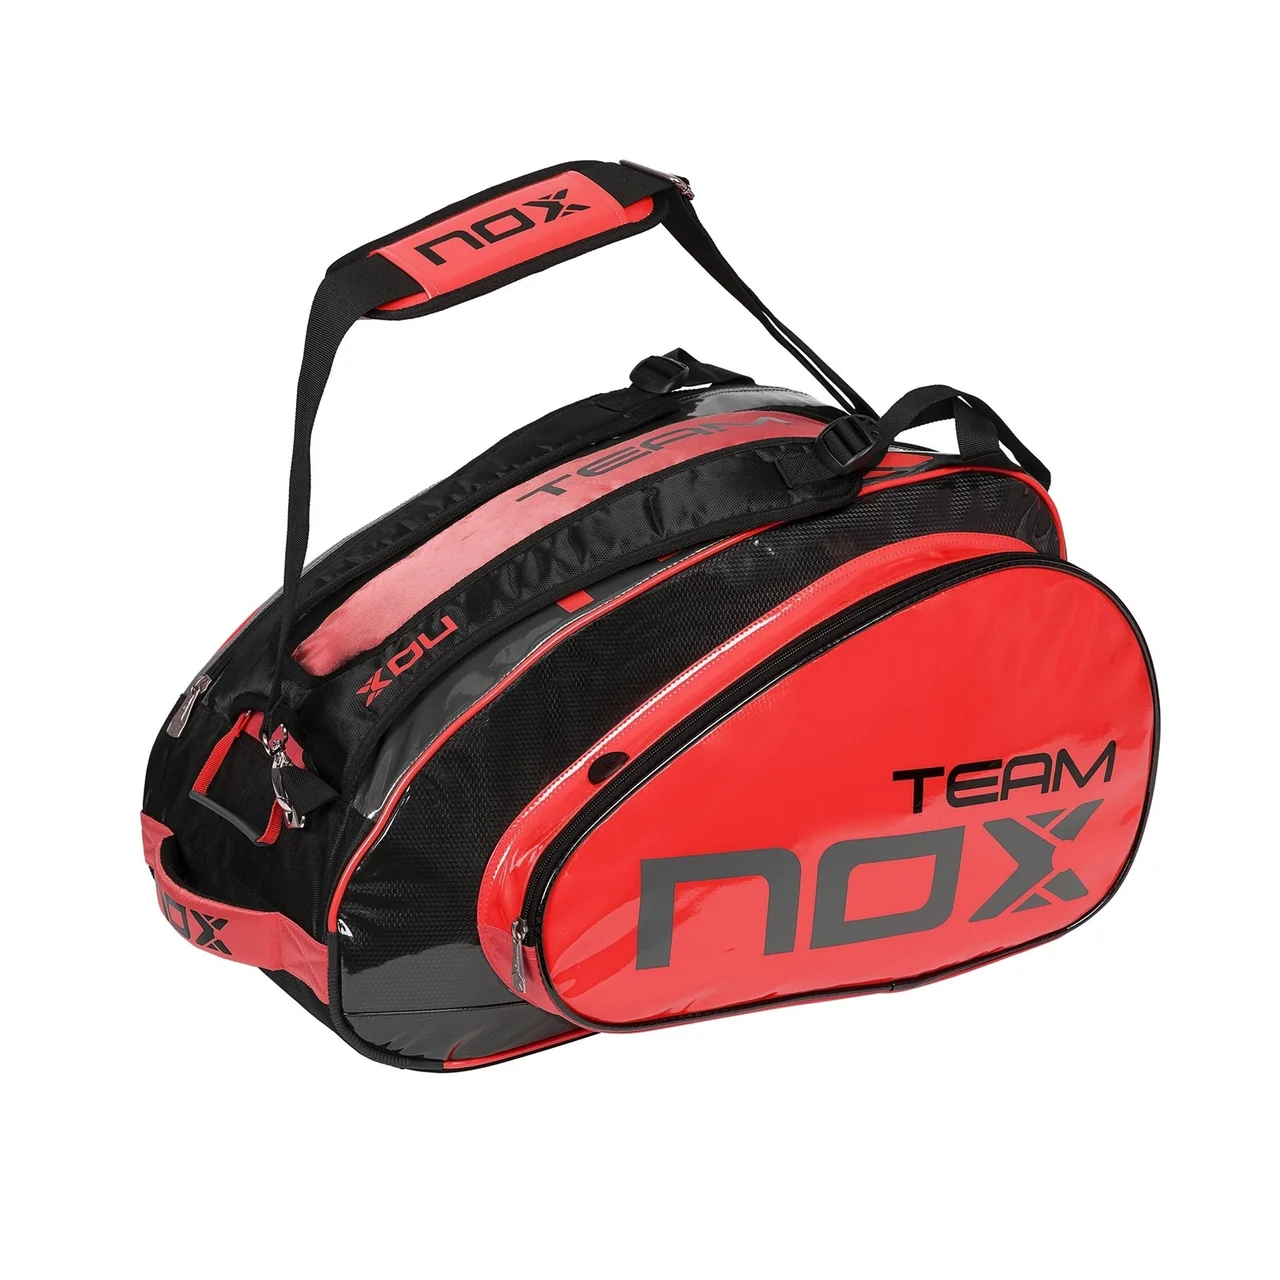 Nox Team Padel Bag Red